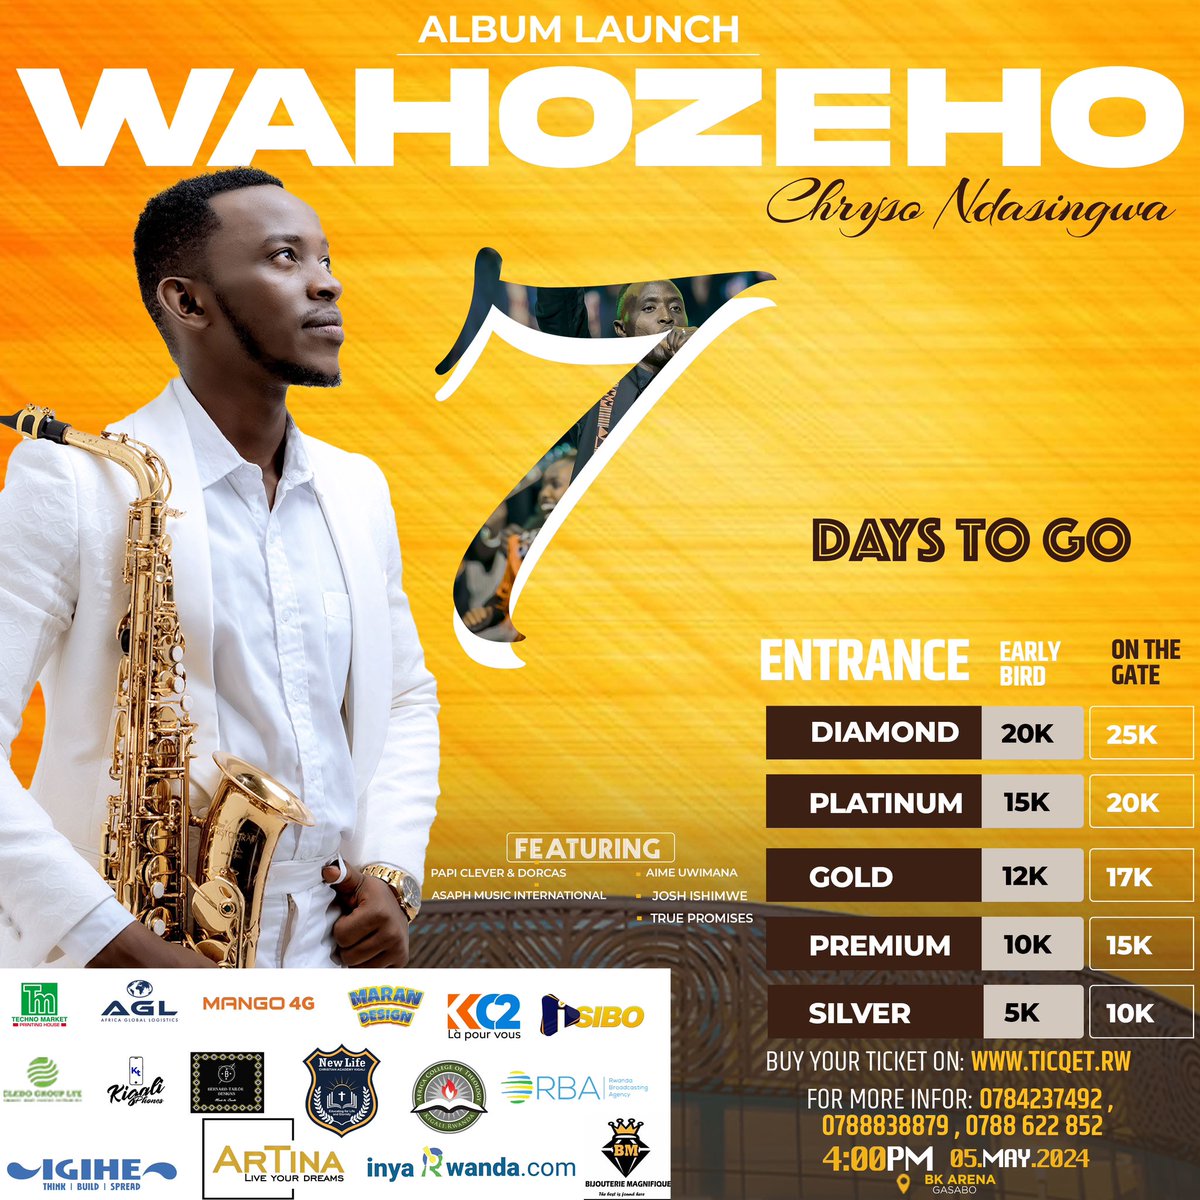 Mwiriwe neza!! Harabura iminsi 7 yonyine Chryso Ndasingwa n'abandi baramyi dukunda bagahurira muri “Wahozeho Album Launch” izabera muri BK Arena tariki 05.05.2024. Gura itike kuri ticqet.rw tuzafatanye kuramya no guhimbaza Imana. #WahozehoAlbumLaunch